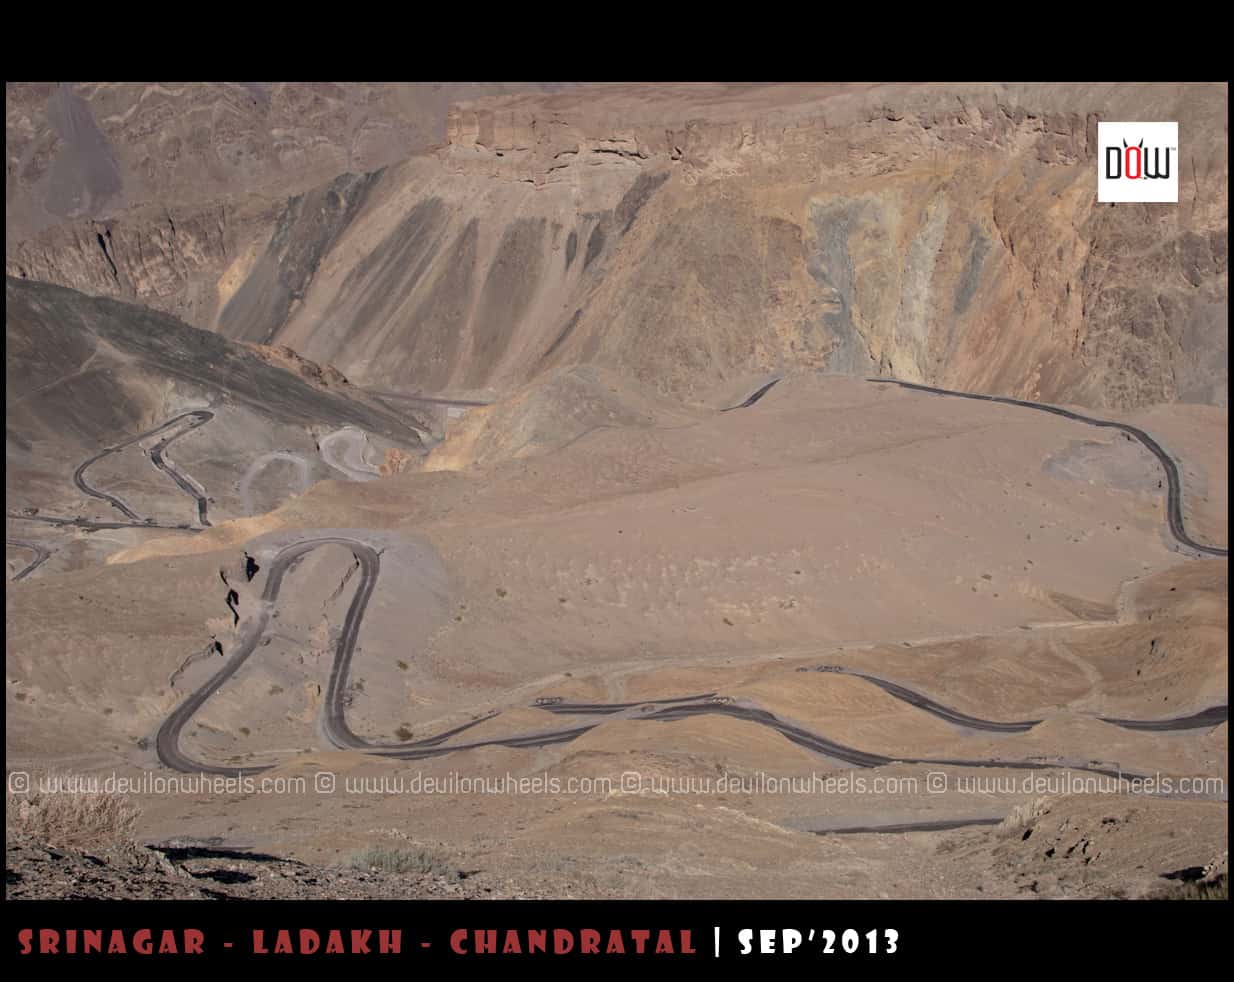 Hangroo Loops at Srinagar - Leh Highway